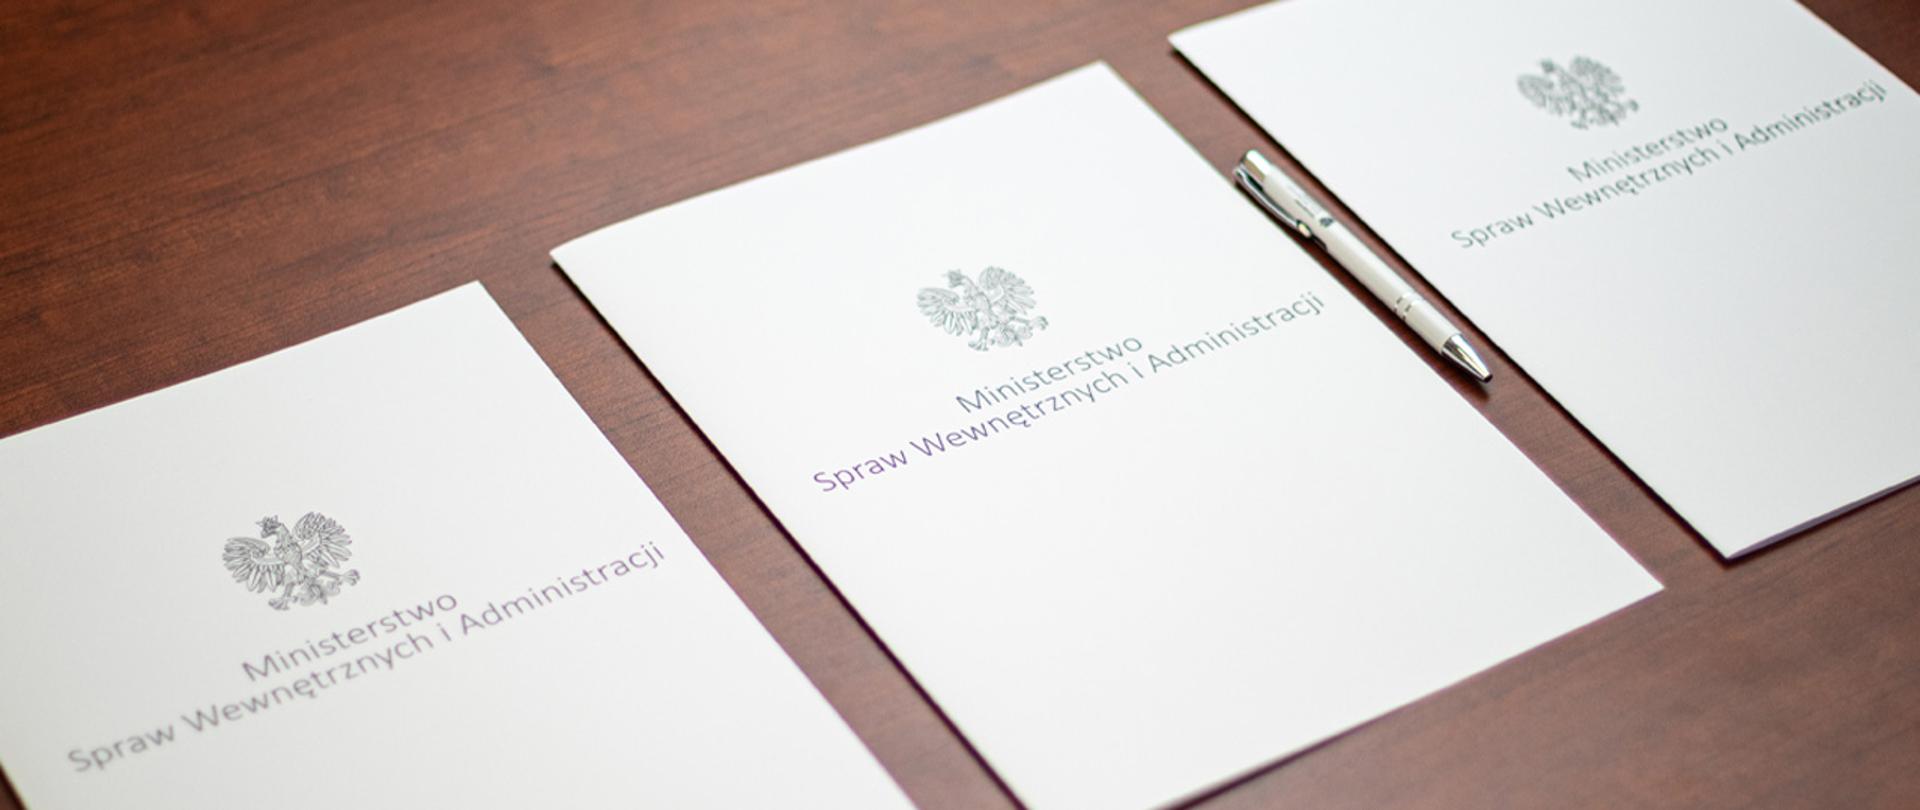 Na zdjęciu widać trzy leżące w rzędzie teczki na dokumenty z napisem "Ministerstwo Spraw Wewnętrznych i Administracji" i orłem z godła narodowego. Obok jednej z nich leży długopis MSWiA.